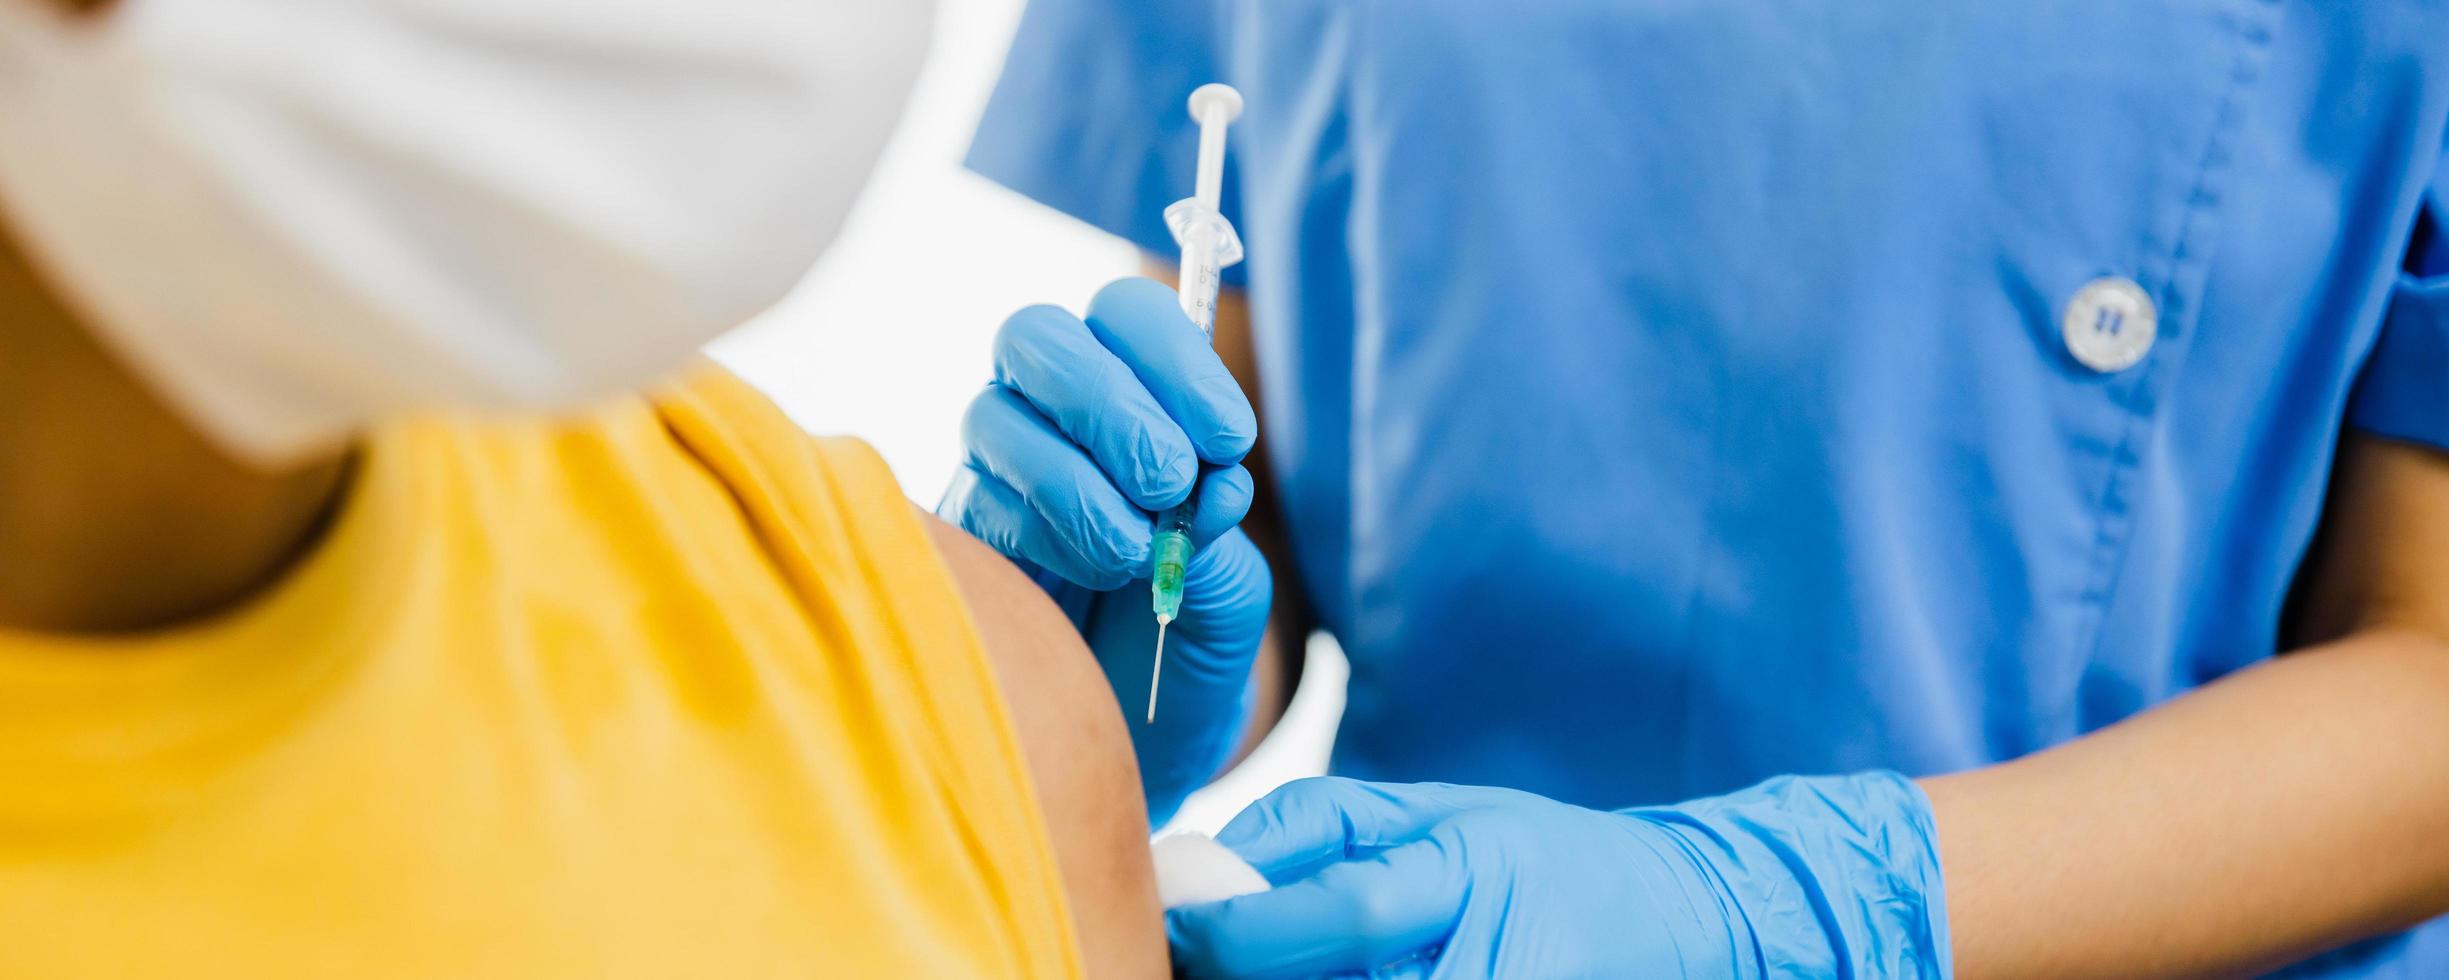 fermer la main d'une femme médecin tenant une seringue et utilisant du coton avant de faire l'injection au patient dans un masque médical. vaccin covid-19 ou coronavirus photo